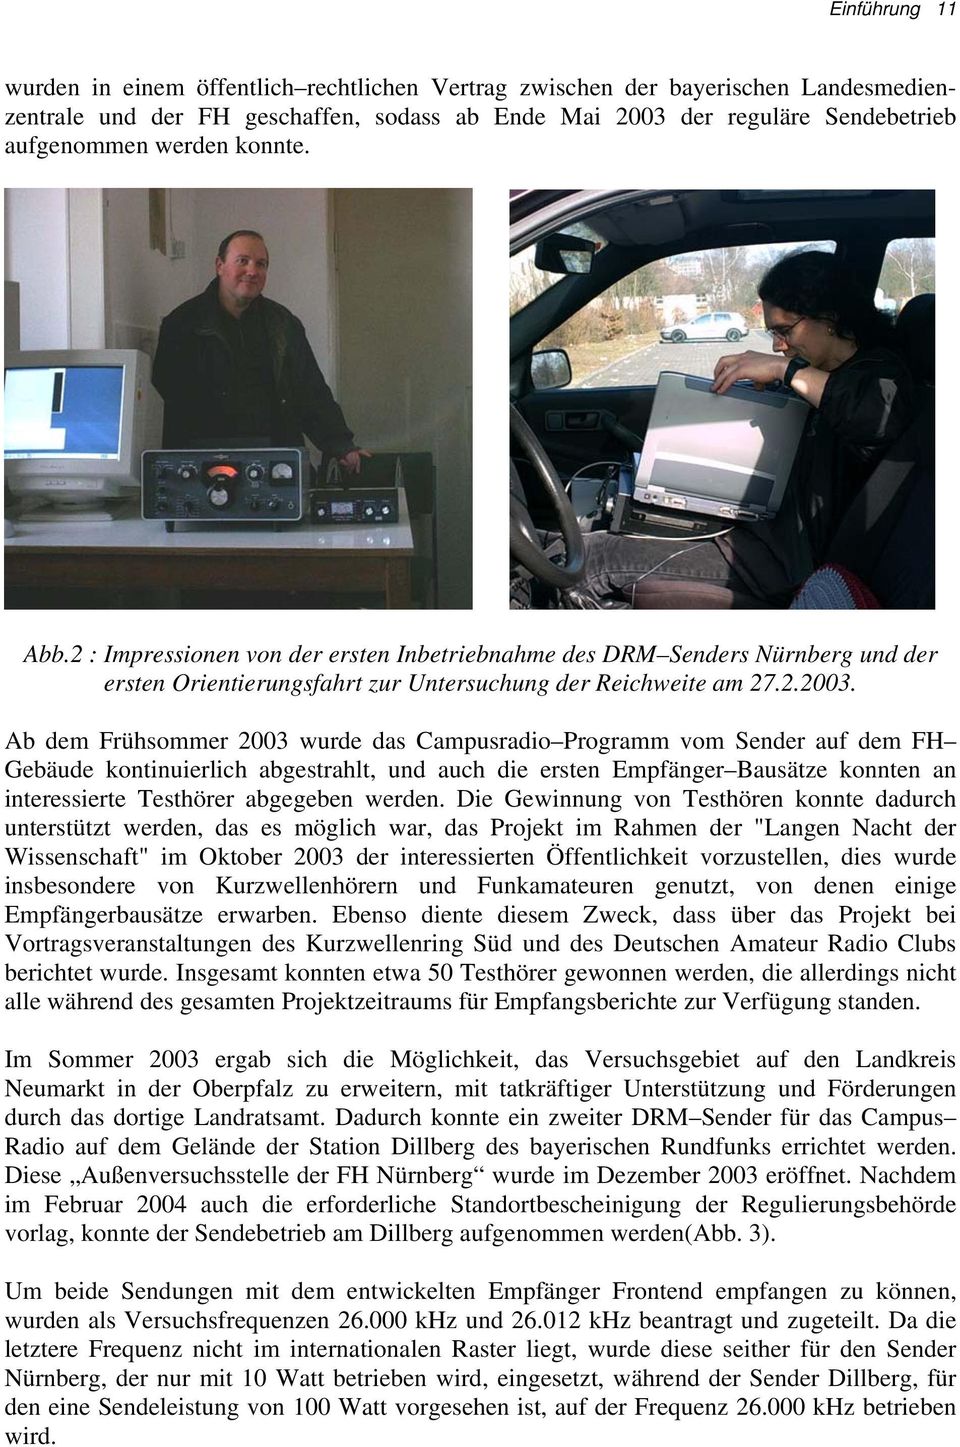 Ab dem Frühsommer 2003 wurde das Campusradio Programm vom Sender auf dem FH Gebäude kontinuierlich abgestrahlt, und auch die ersten Empfänger Bausätze konnten an interessierte Testhörer abgegeben